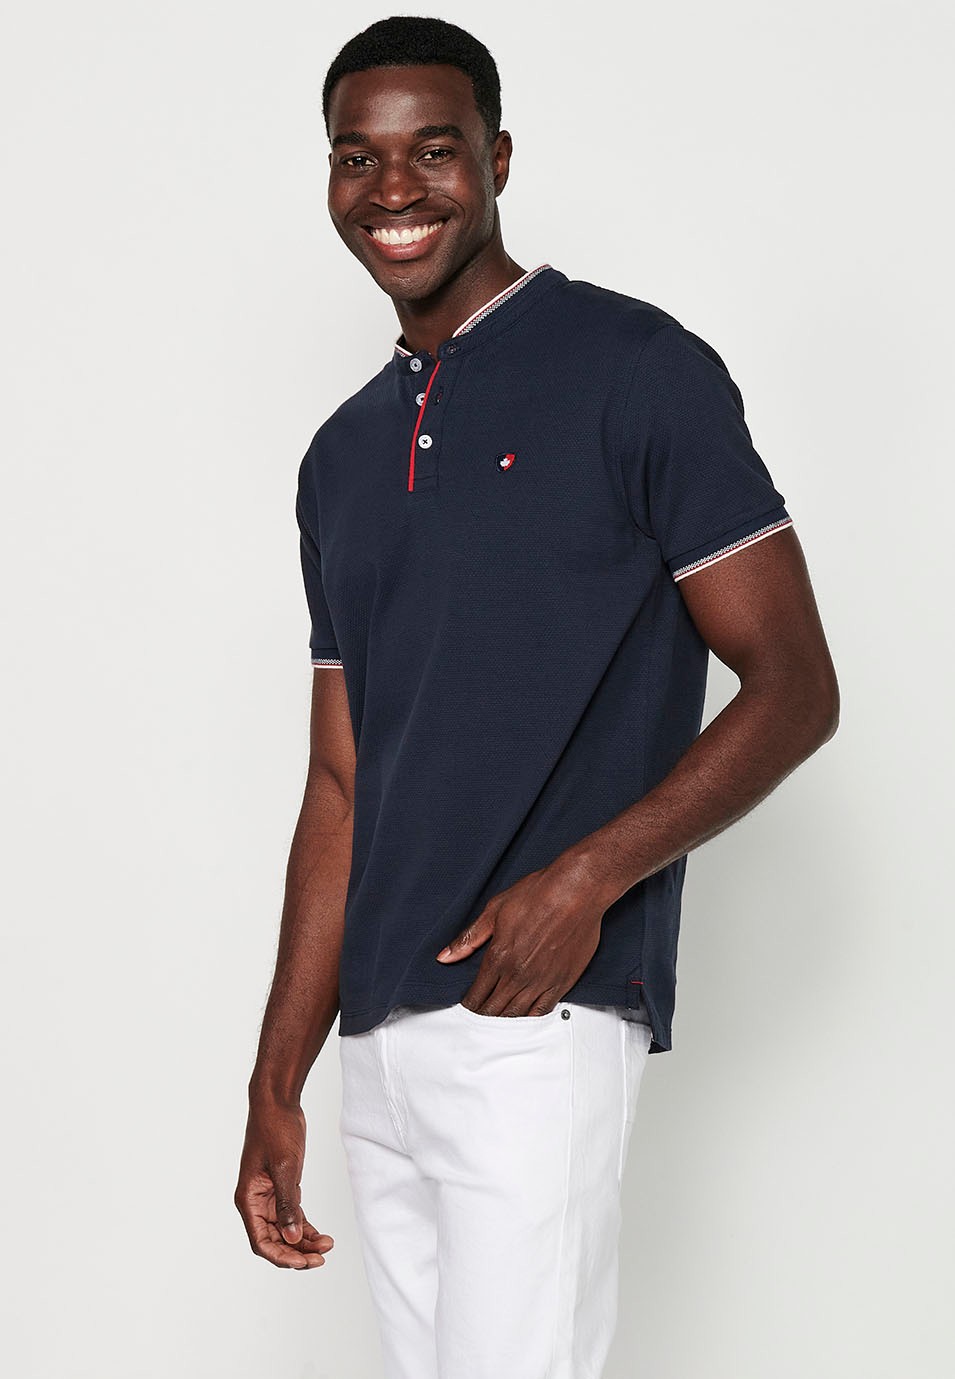 Kurzärmeliges Baumwoll-Poloshirt mit geripptem Finish, Rundhalsausschnitt, geknöpfter Öffnung und strukturierten Seitenschlitzen in der Farbe Marineblau für Herren 2